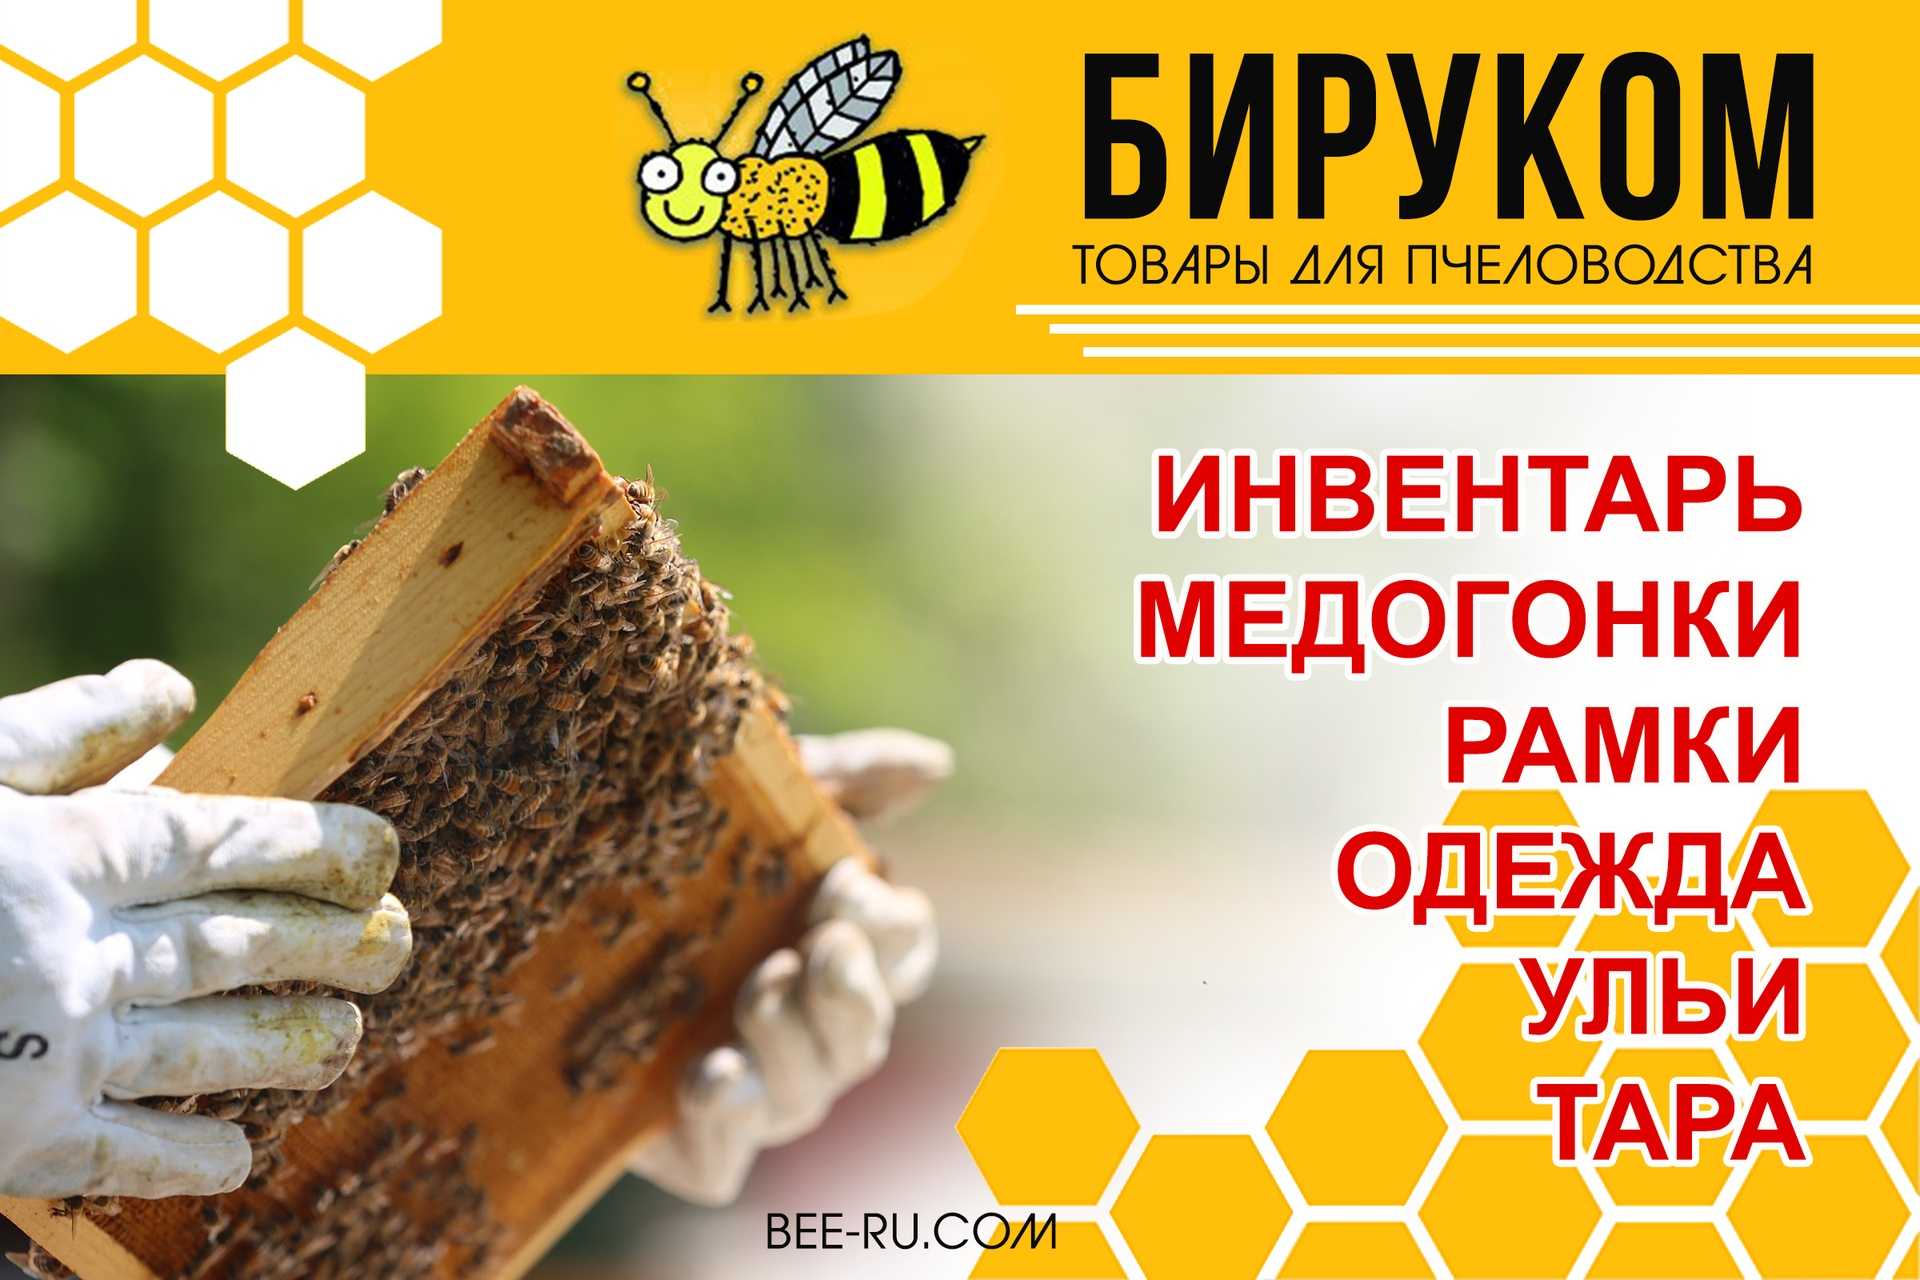 Инвентарь для пчеловодства, все для пасеки, какое оборудование можно сделать своими руками, видео